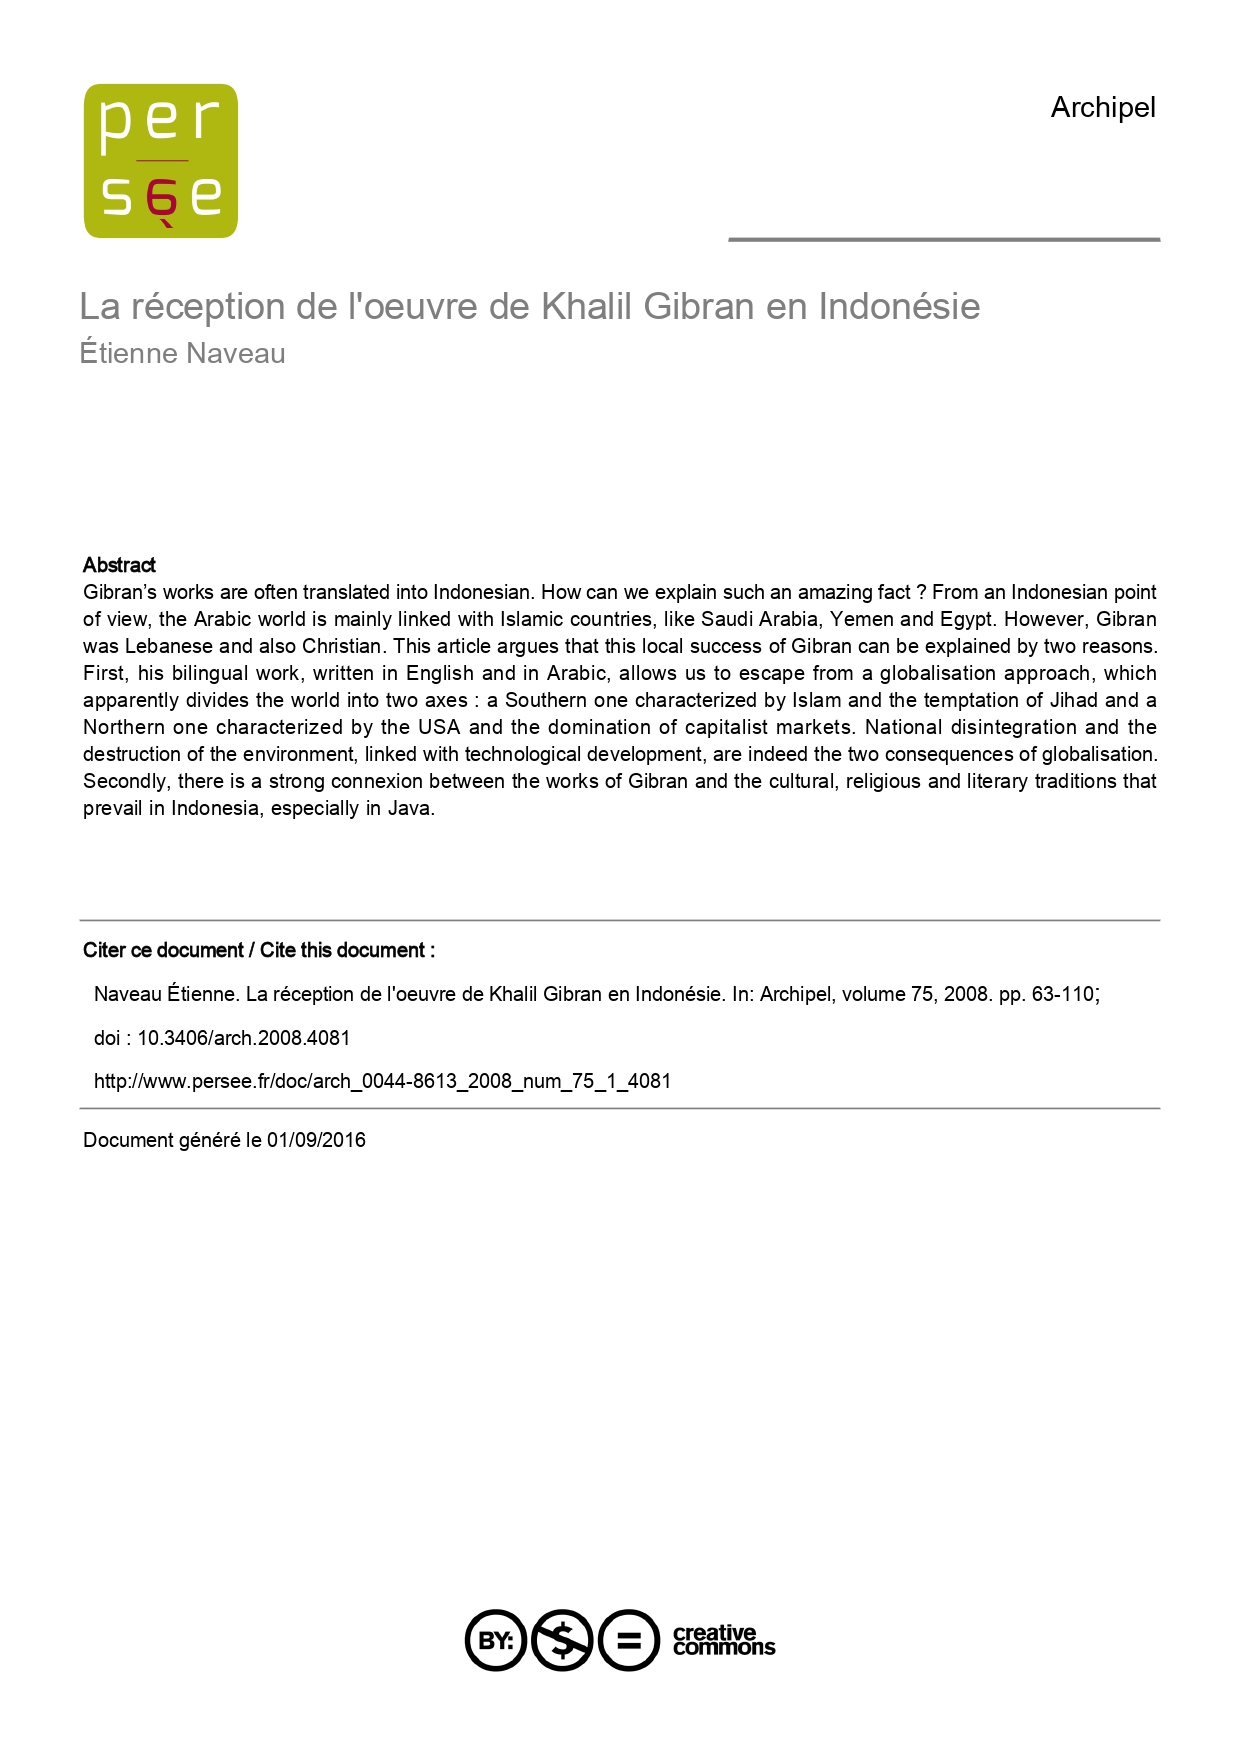 Étienne Naveau, "La réception de l’œuvre de Khalil Gibran en Indonésie", Archipel 75, Paris, 2008, pp. 63-110.